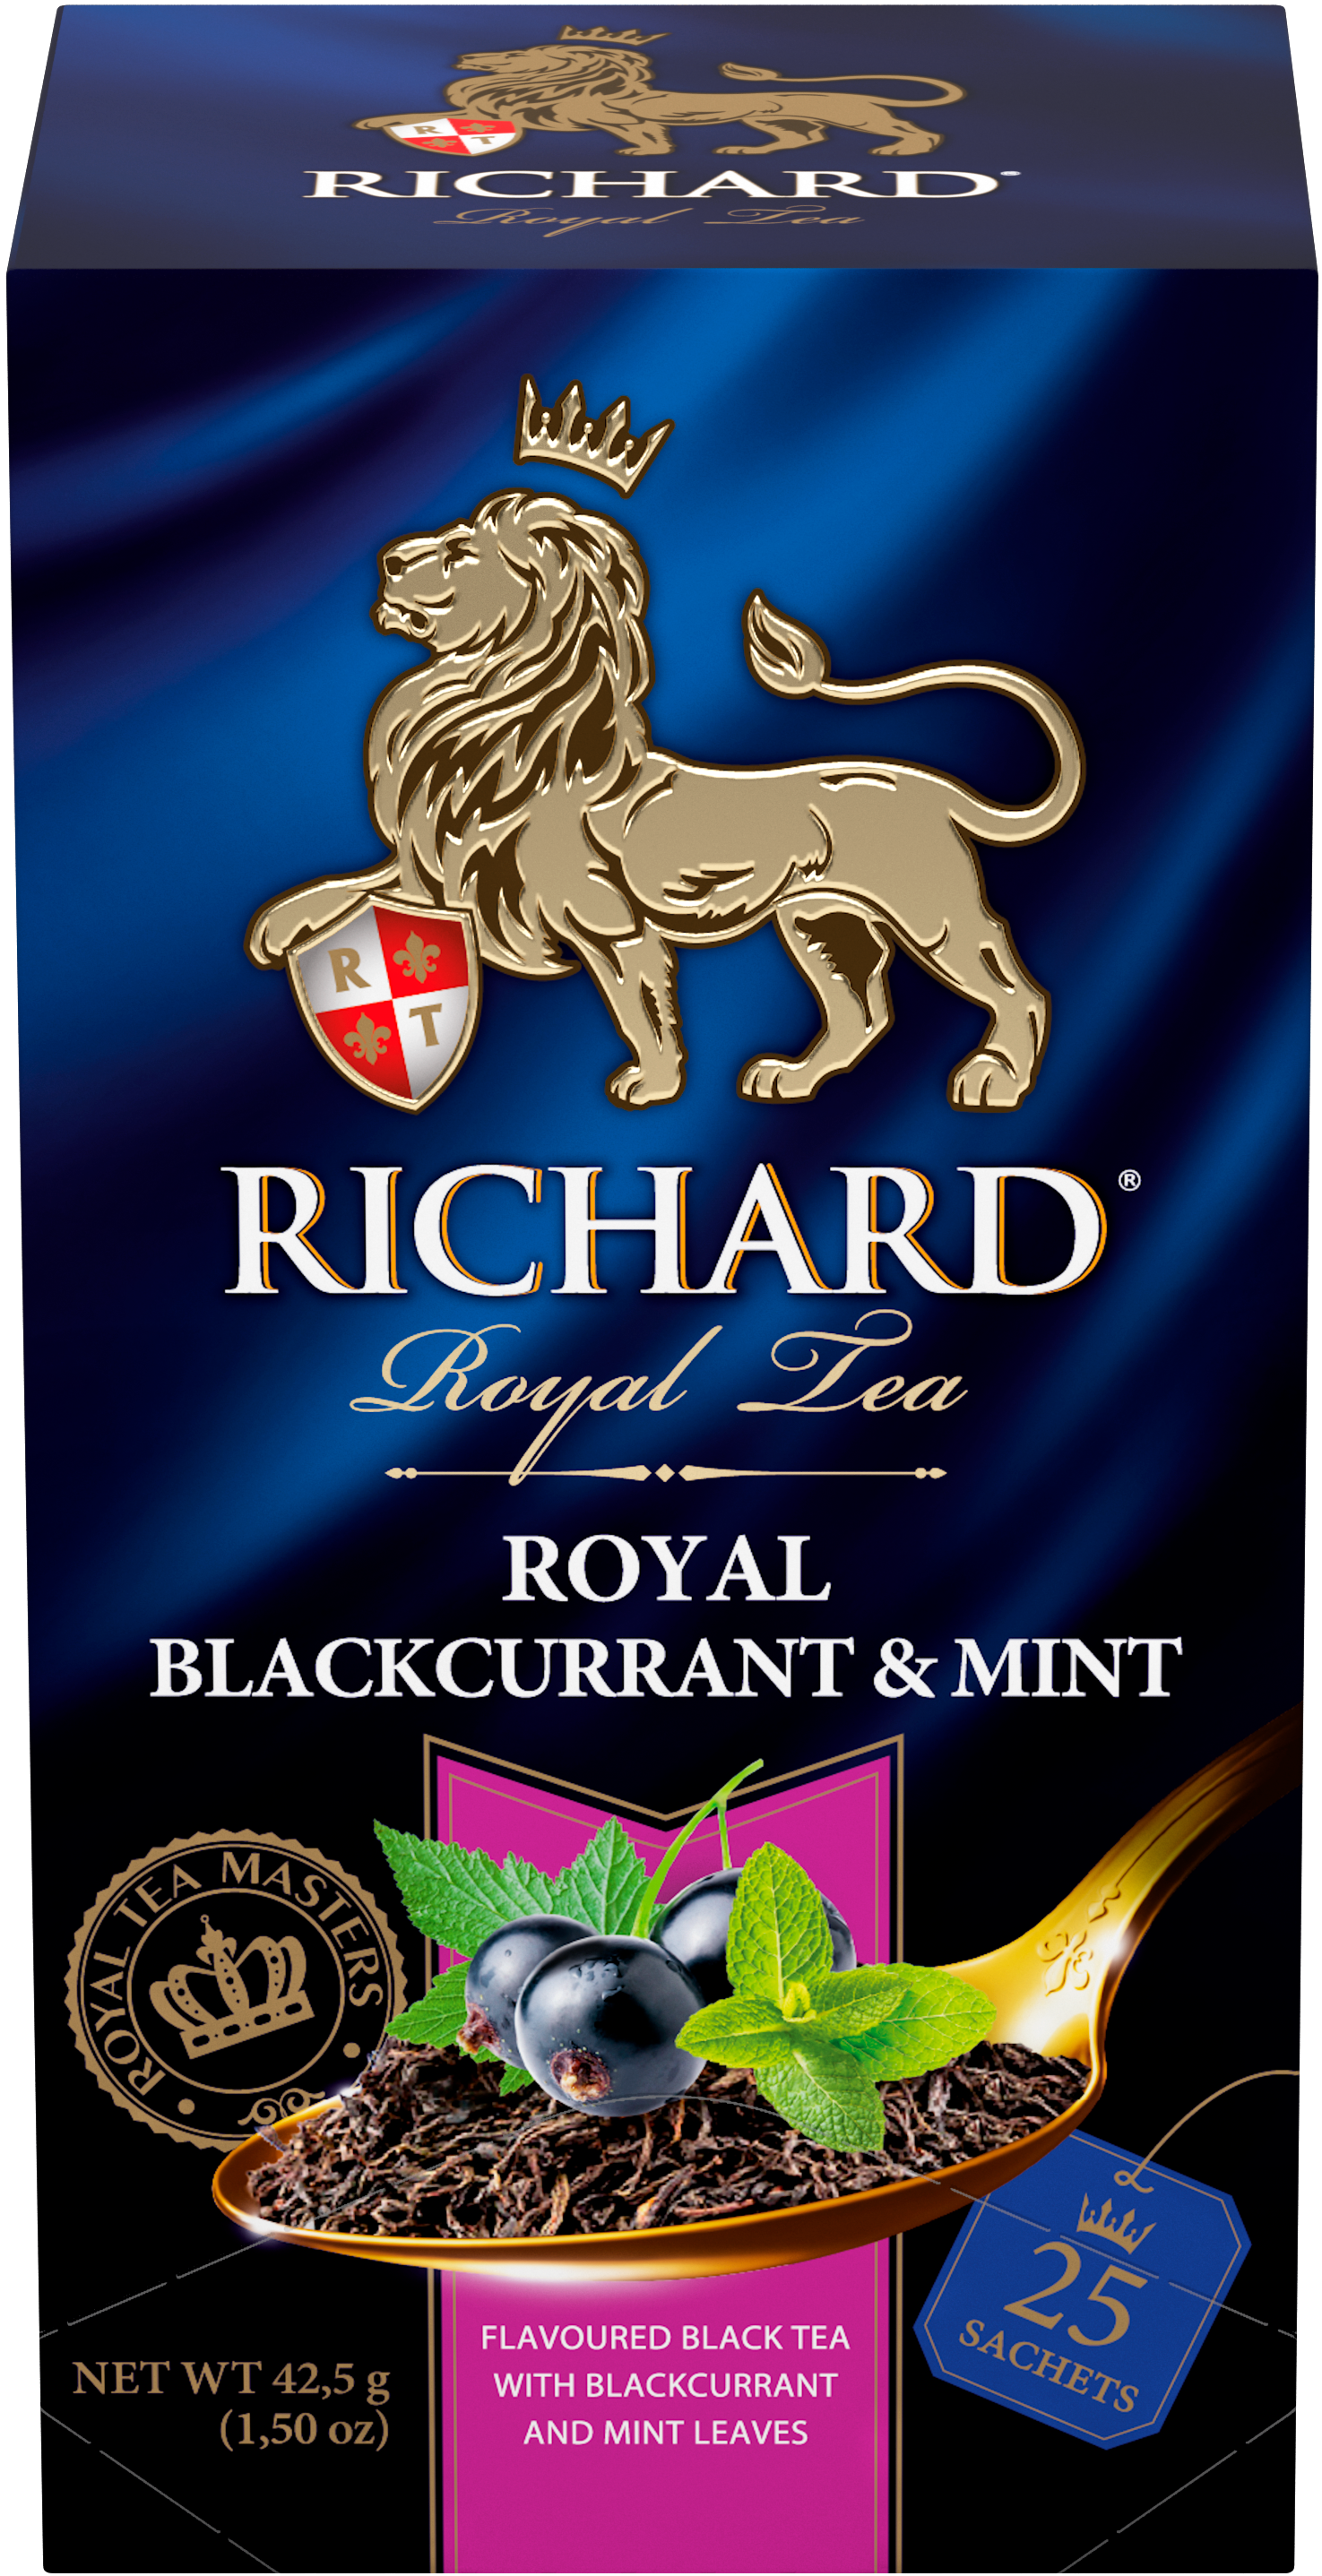 Richard Royal Feketeribizli&Mentol, ízesített fekete tea, filteres, 42,5g - RichardTeavn - vásároljon a 899.00 Ft